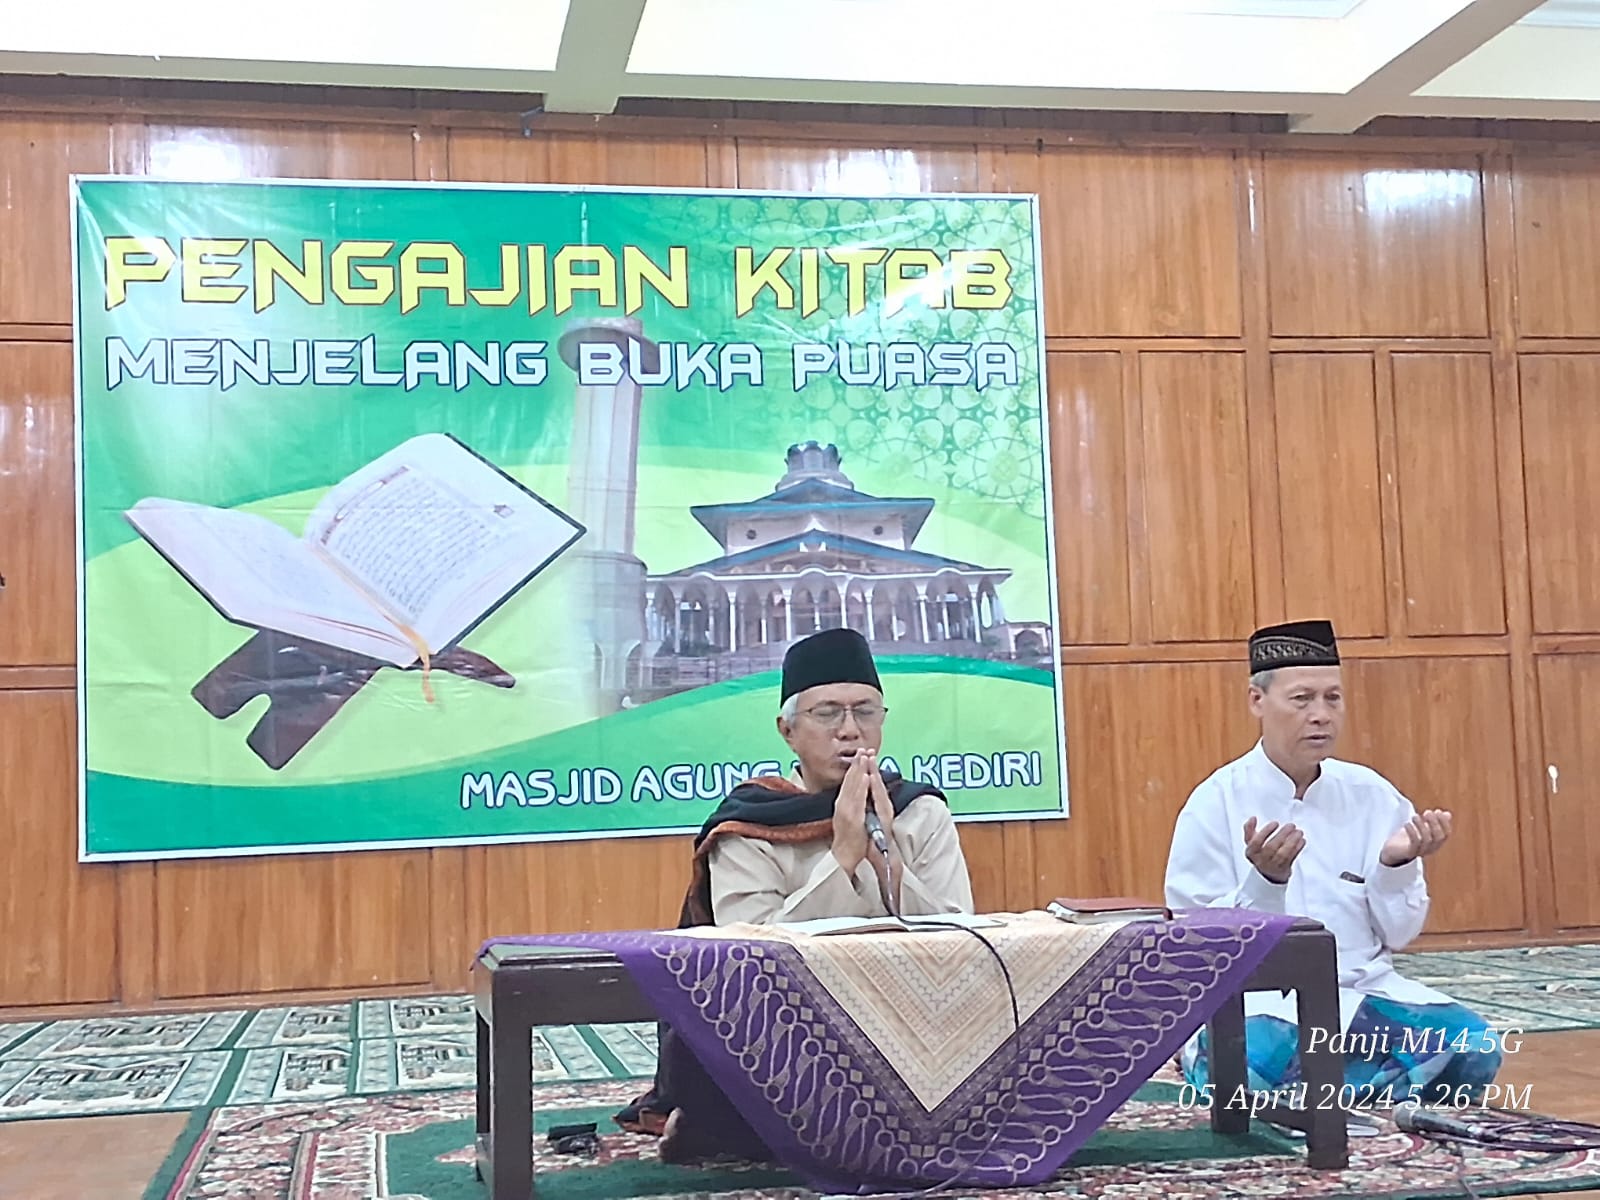 Masjid Agung Kita Kediri ; Pengajian Kitab Menjelang Buka Puasa